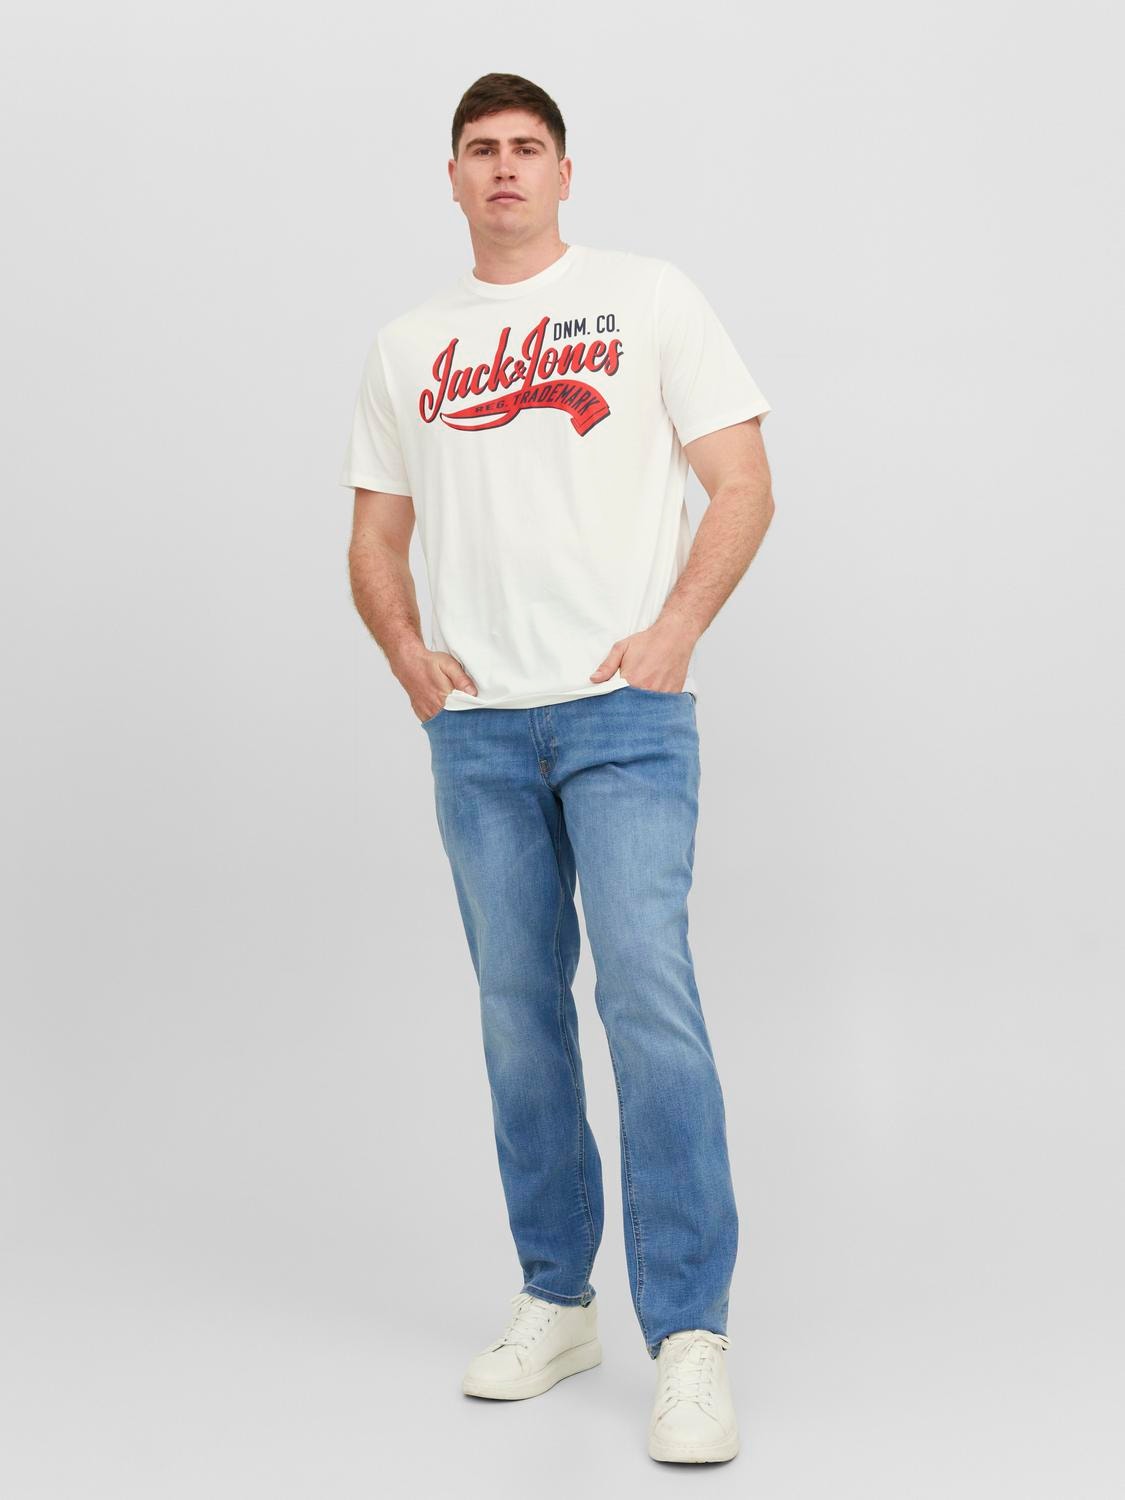 Jack & Jones Plus Size T-shirt Con logo -Cloud Dancer - 12243611